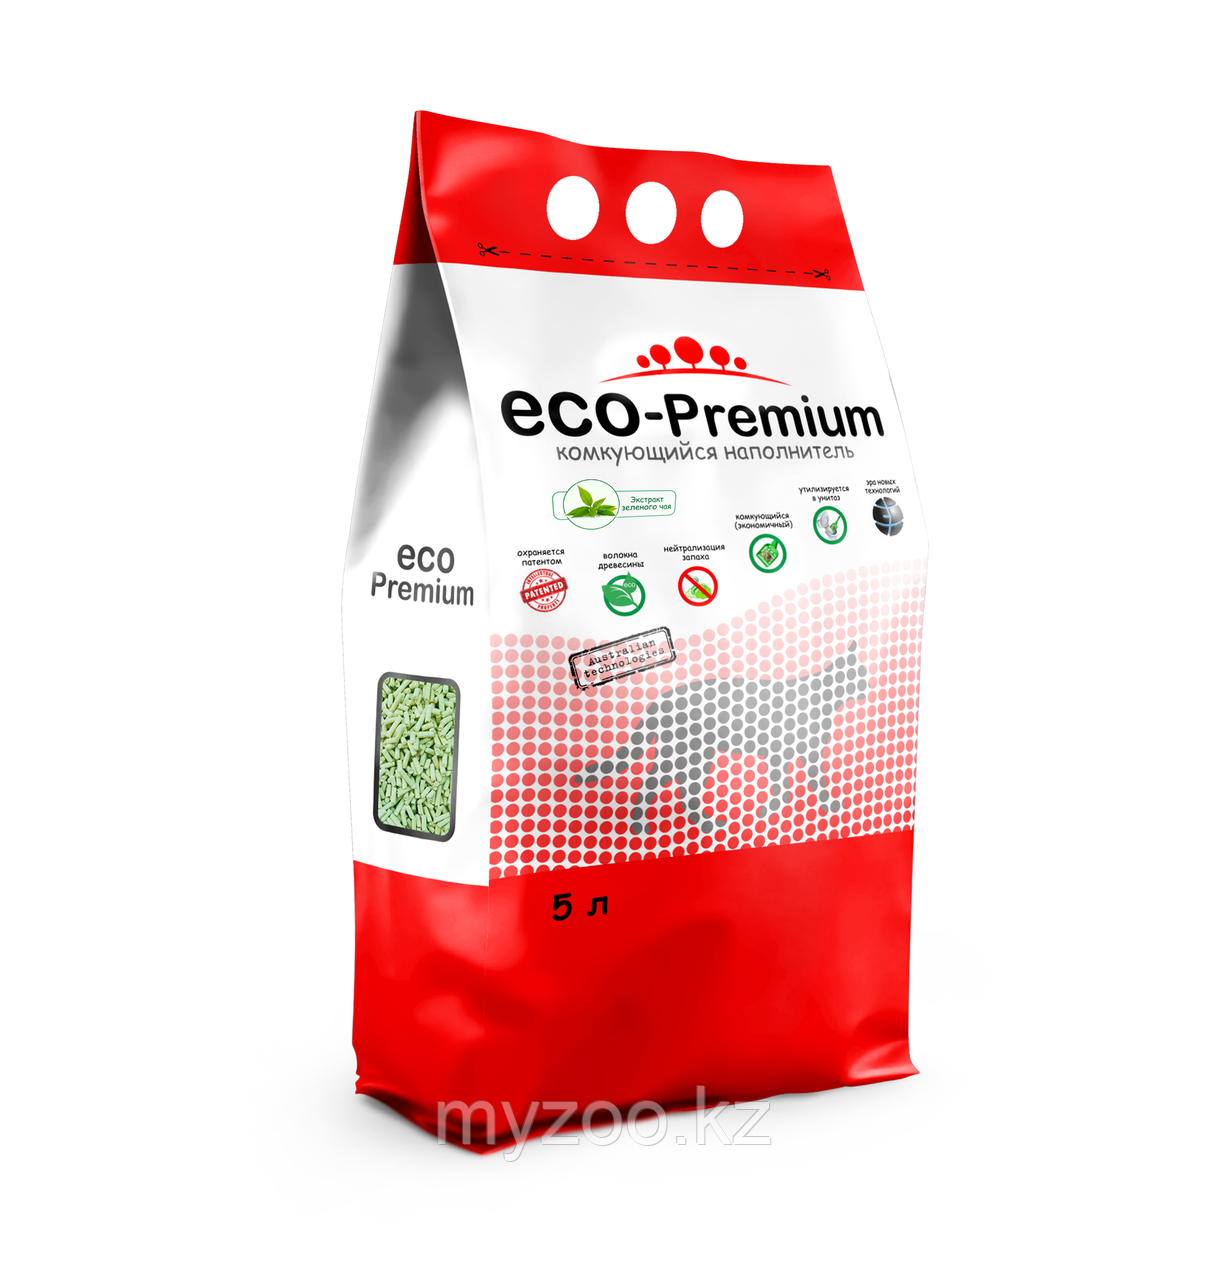 ECO-Premium Зеленый чай, 5 л |Эко-премиум комкующийся древесный наполнитель|